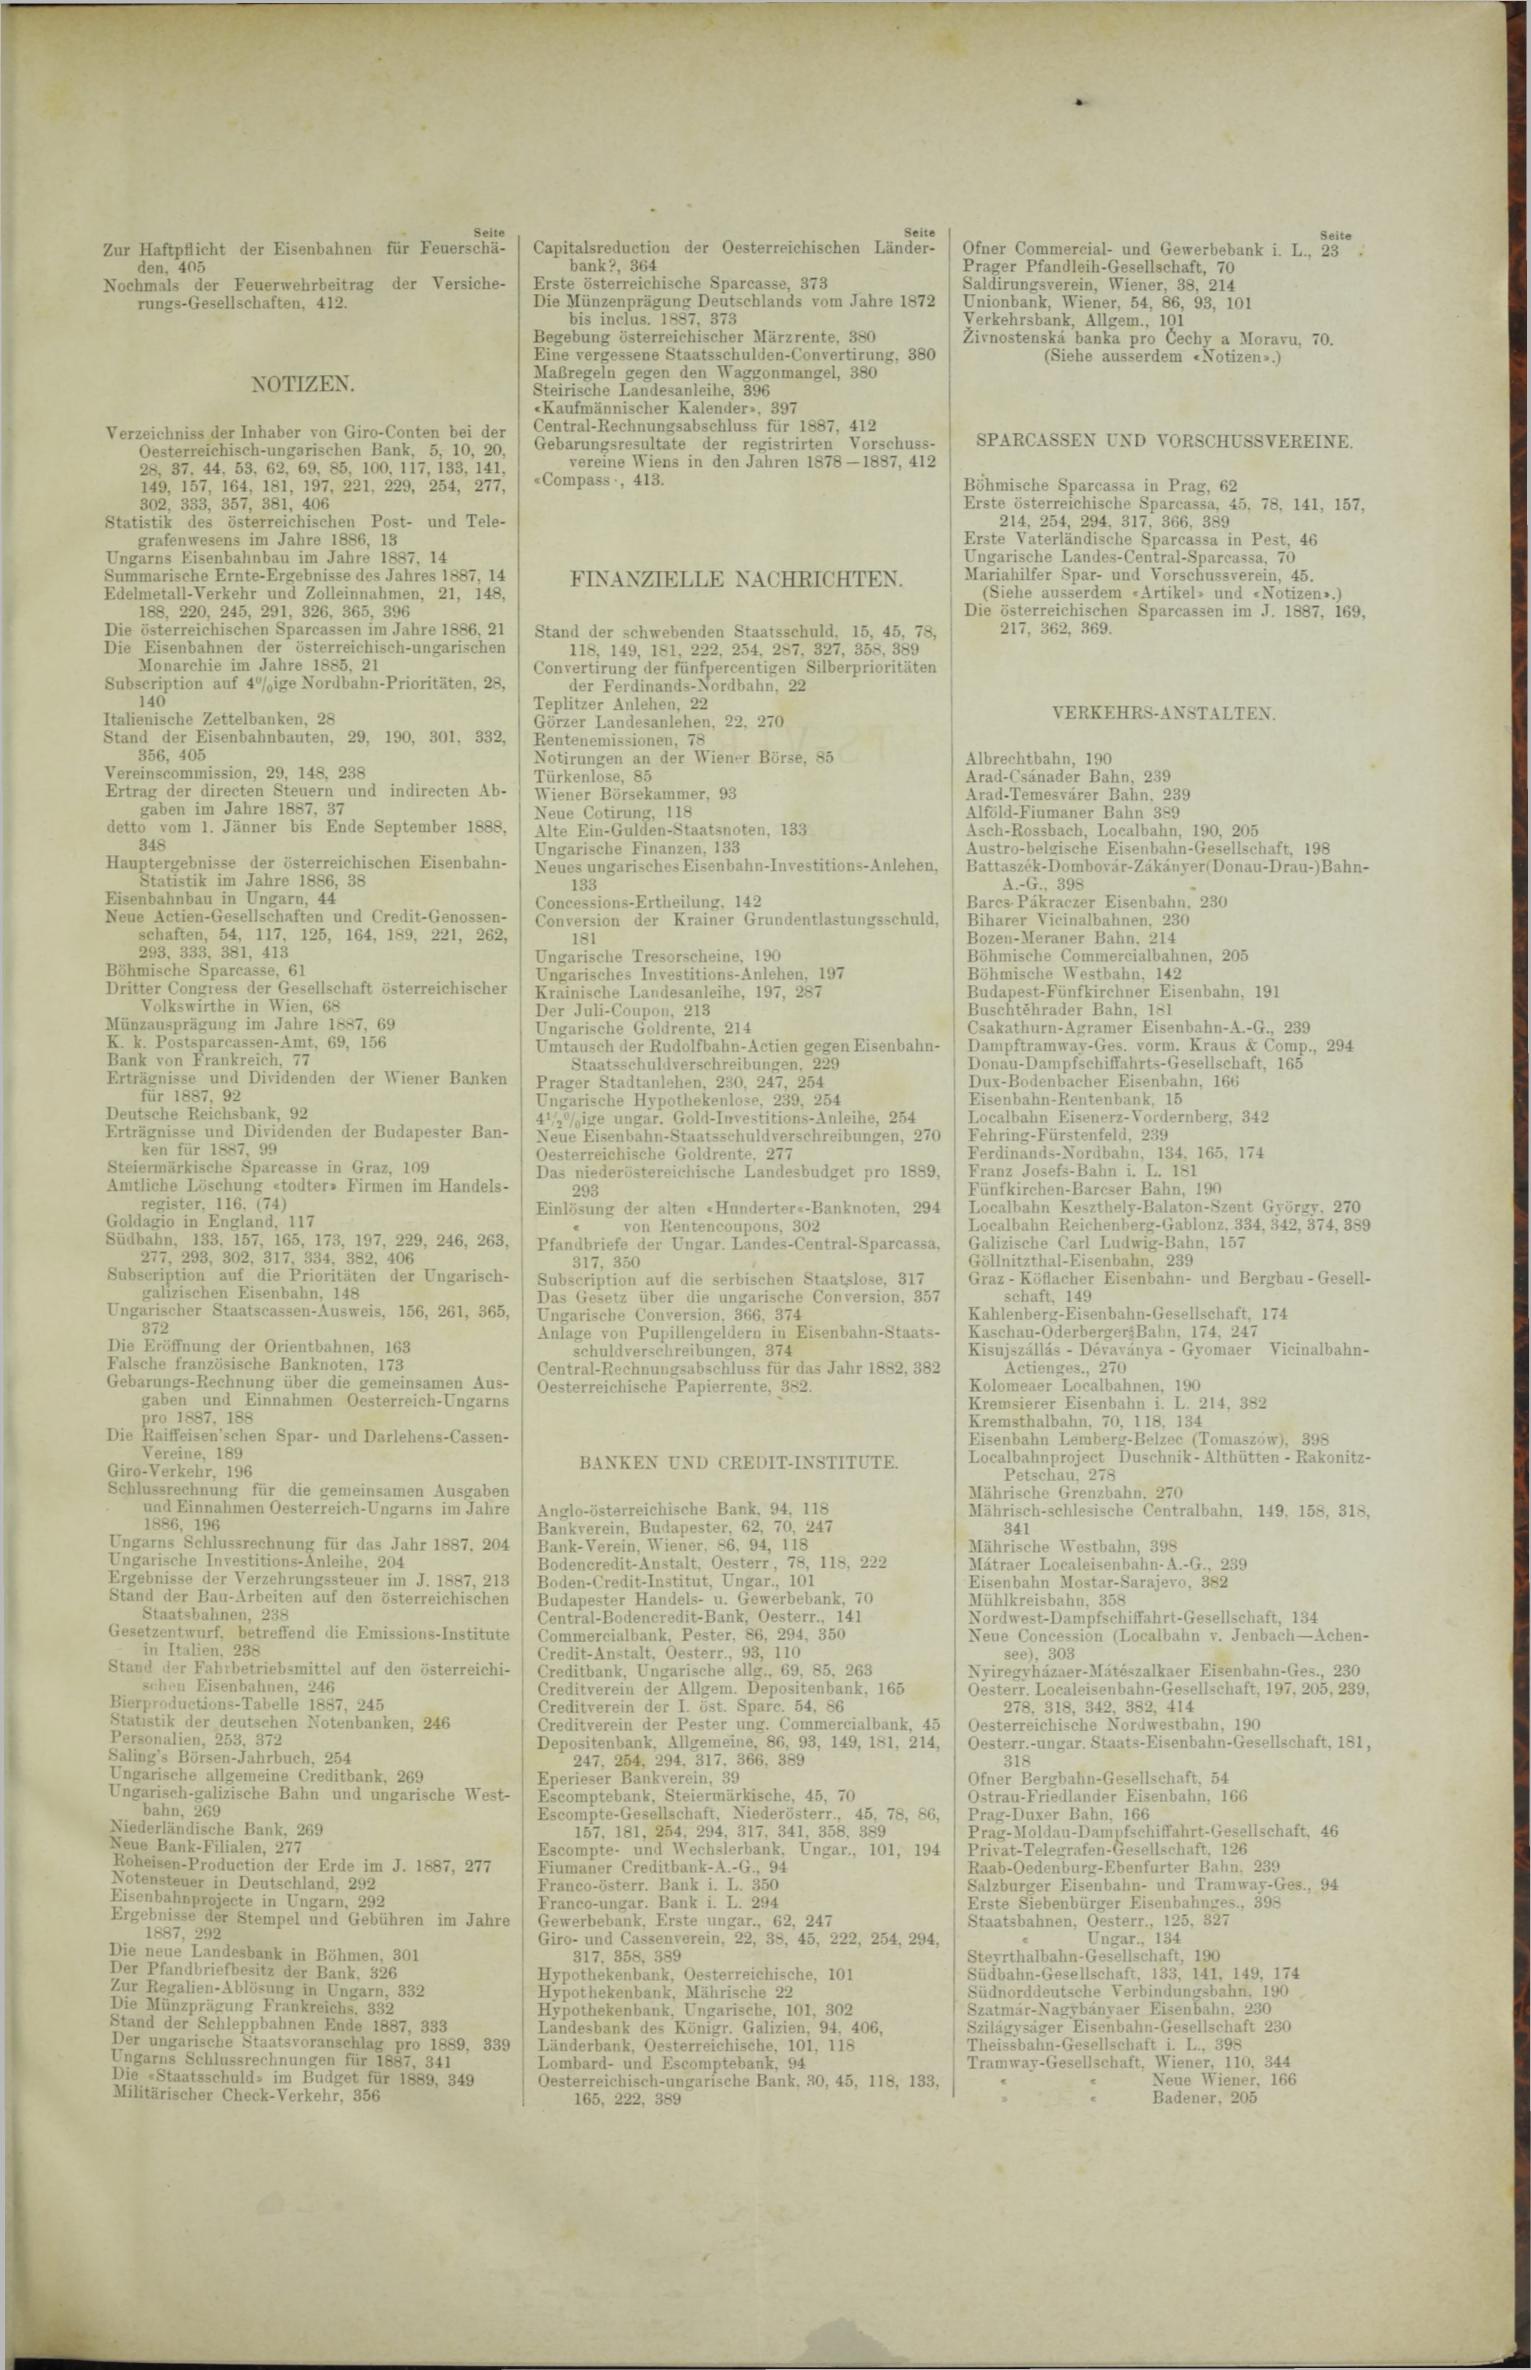 Der Tresor 31.05.1888 - Seite 11